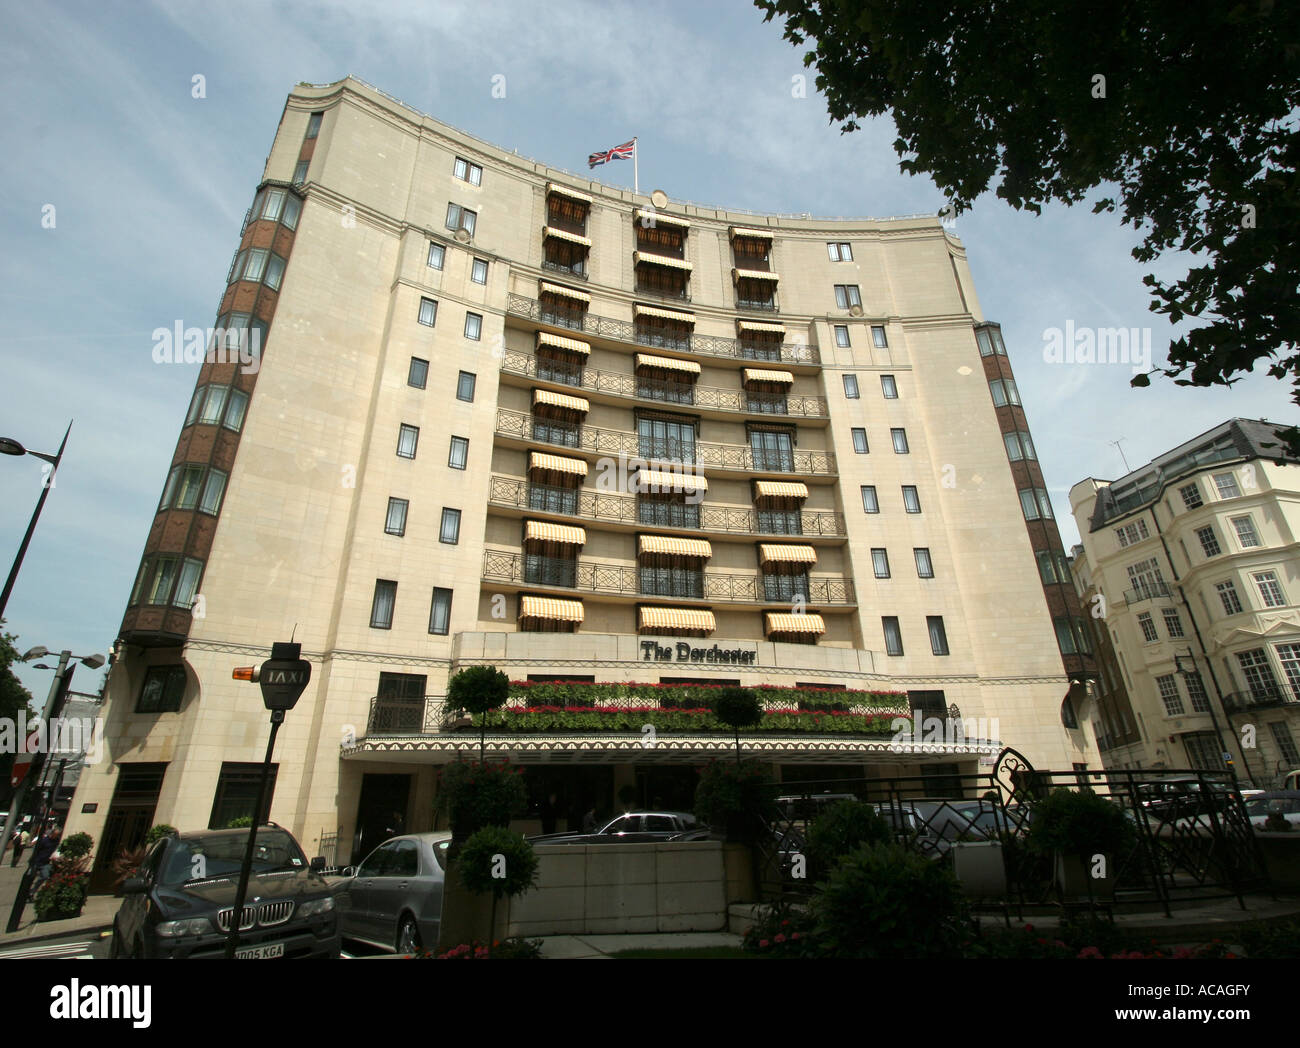 Dorchester Hotel, Park Lane, west London. Stock Photo